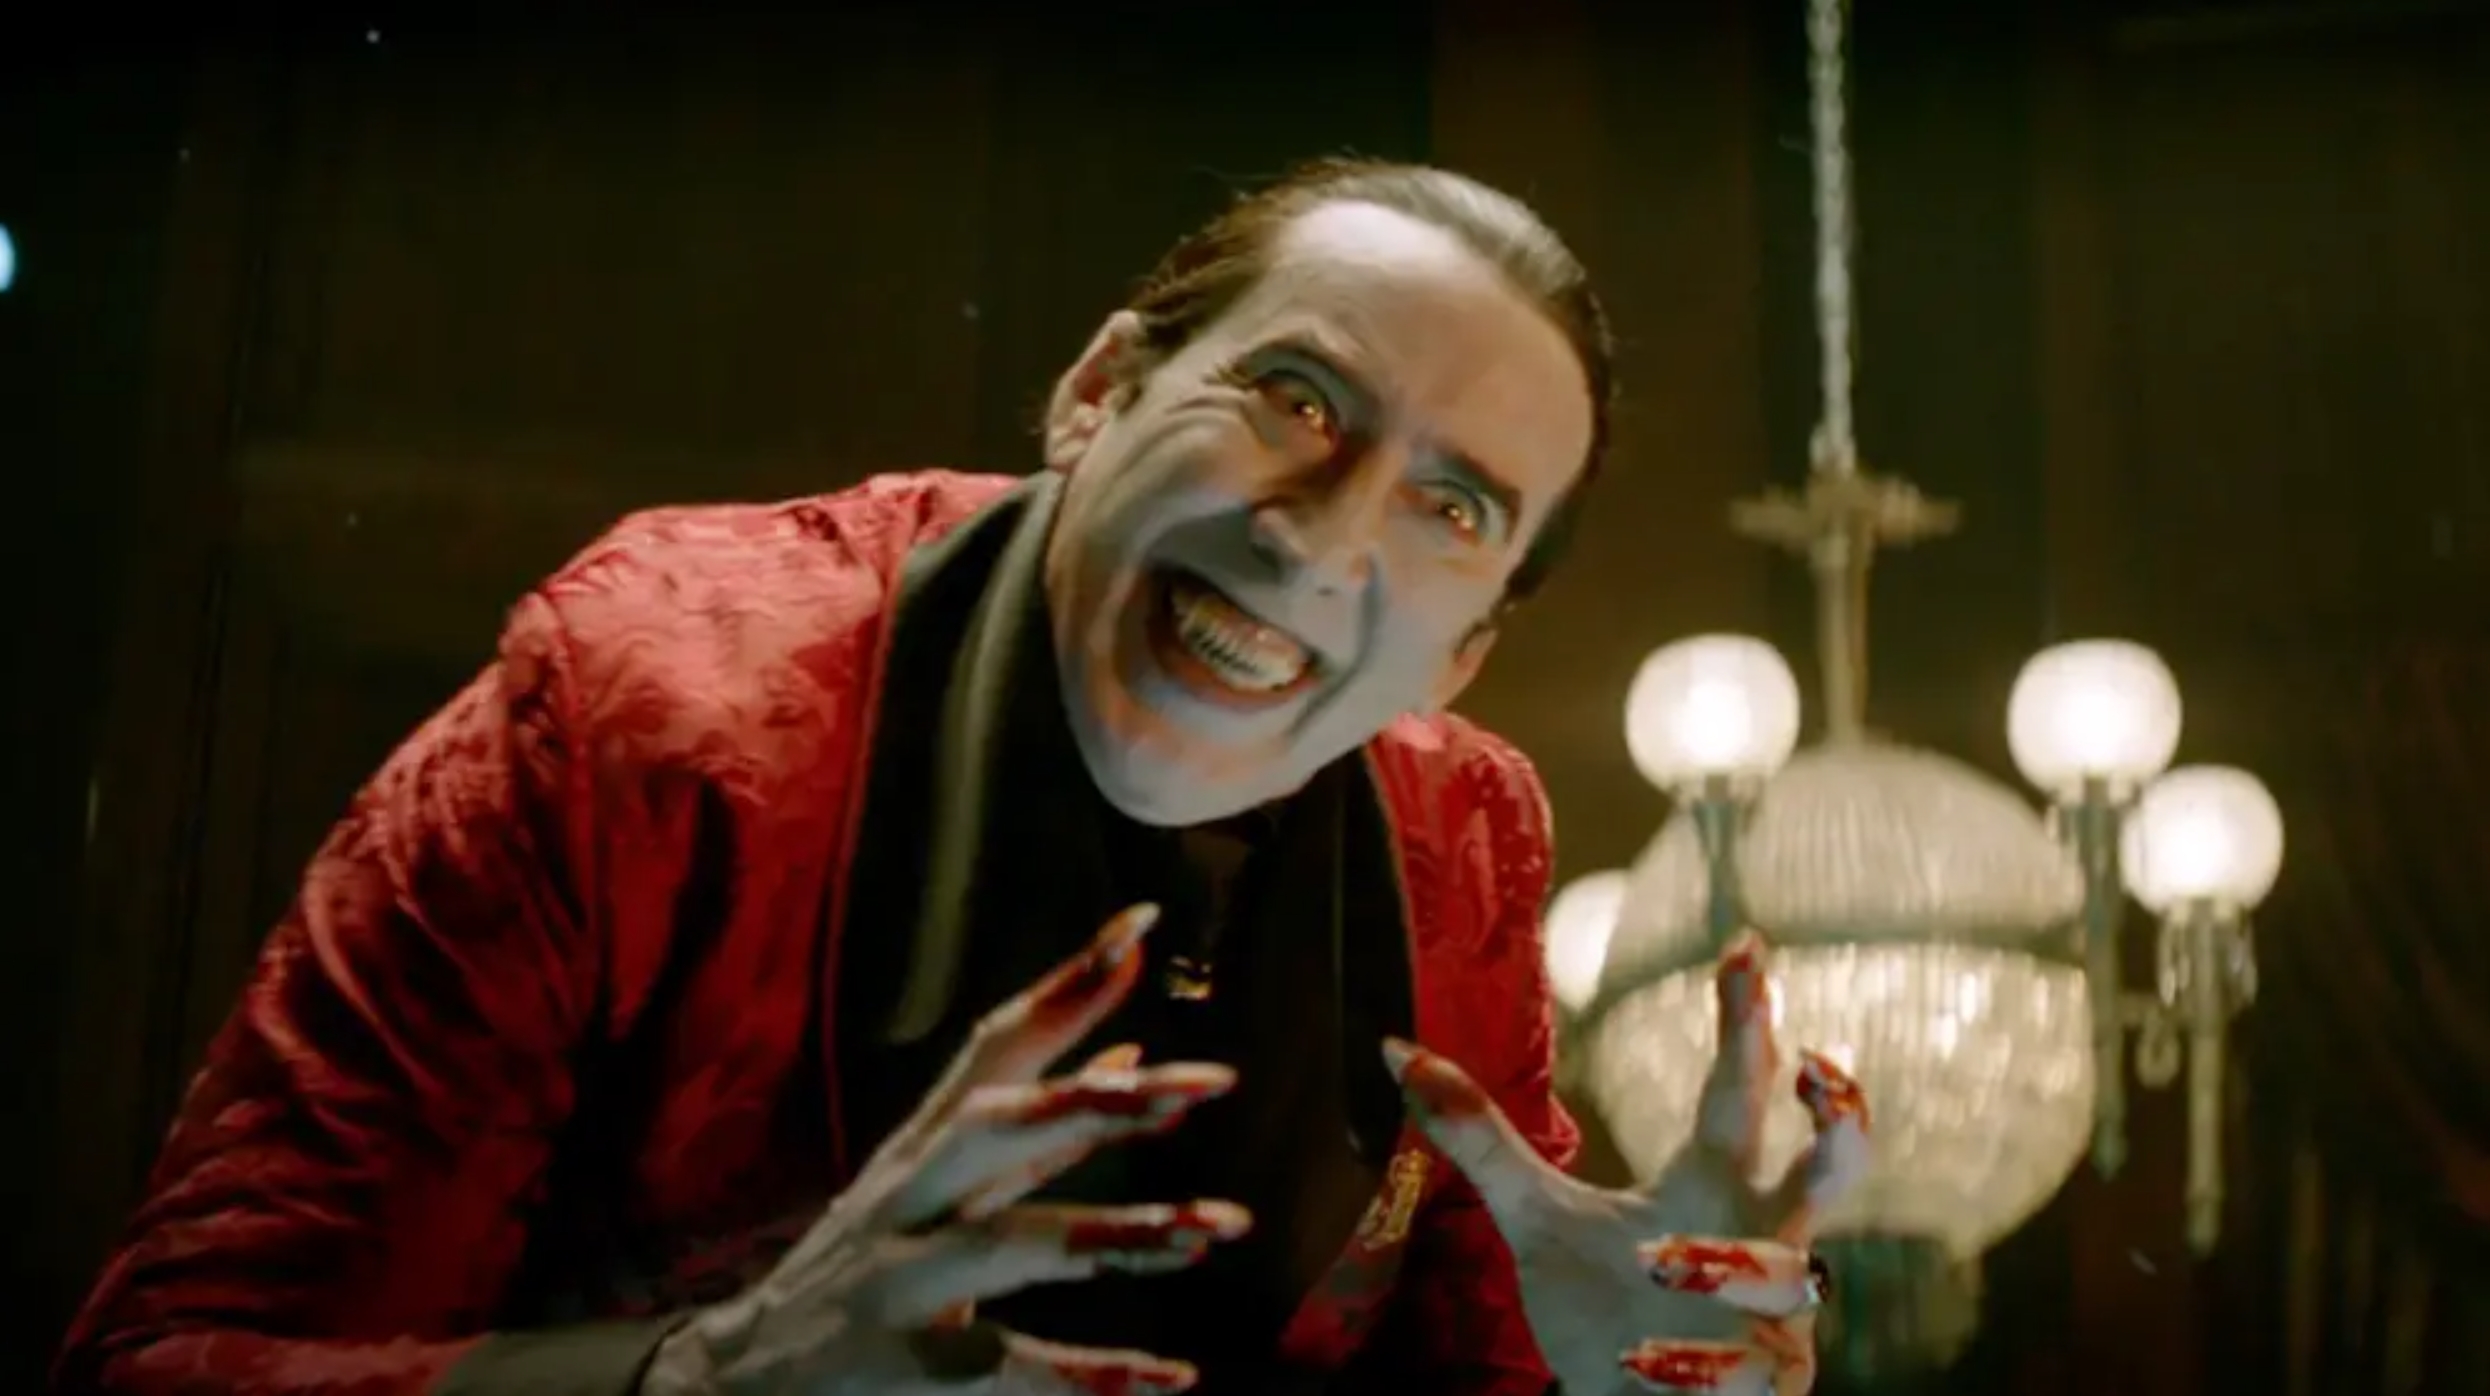 Νέες ταινίες: Ο Νίκολας Κέιτζ είναι ένας φαντασμαγορικός Δράκουλας στο “Ρένφιλντ”